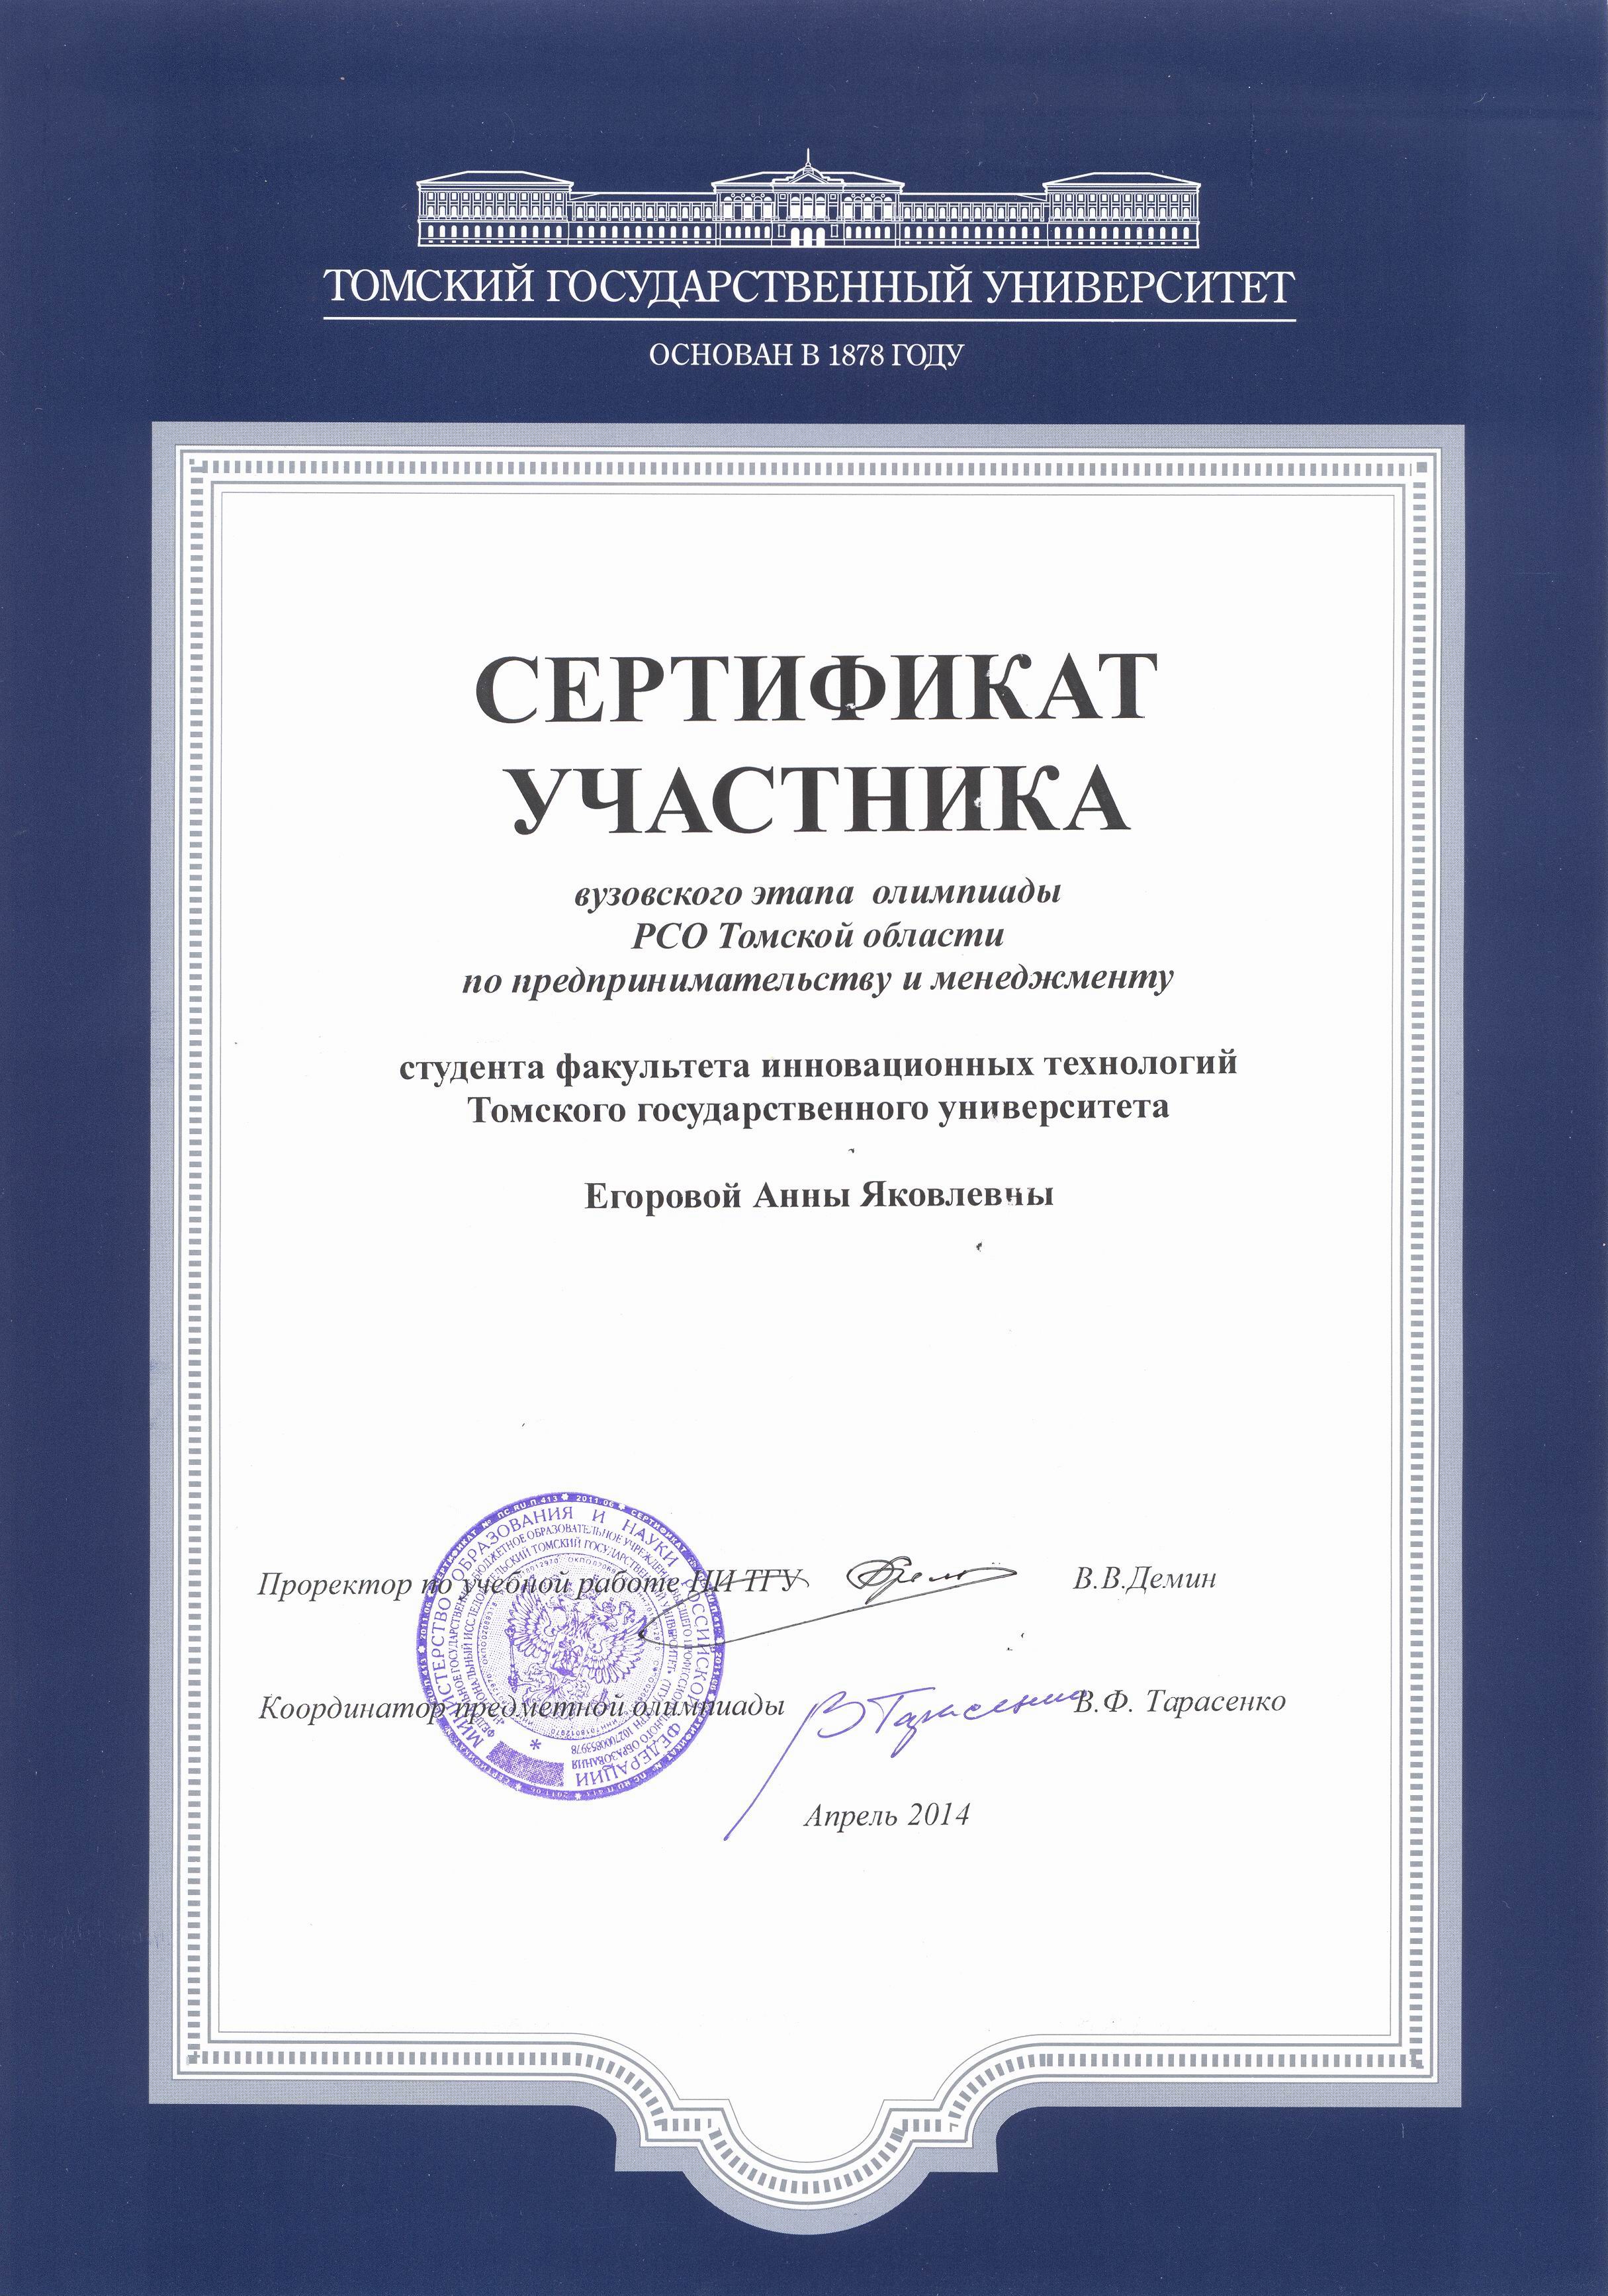 Сертификат Егоровой Анны